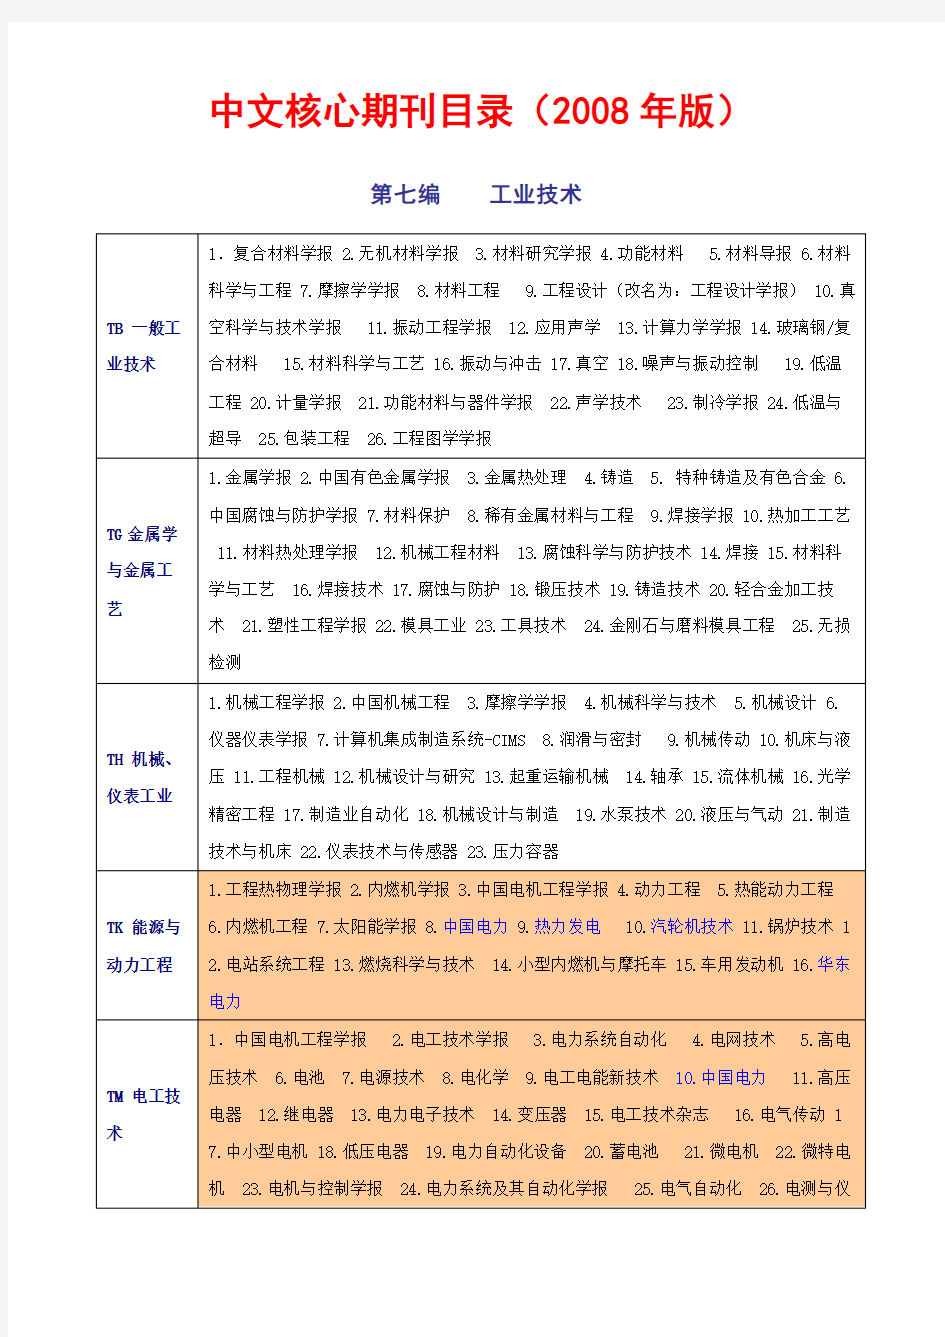 中文核心期刊目录(电力常用)